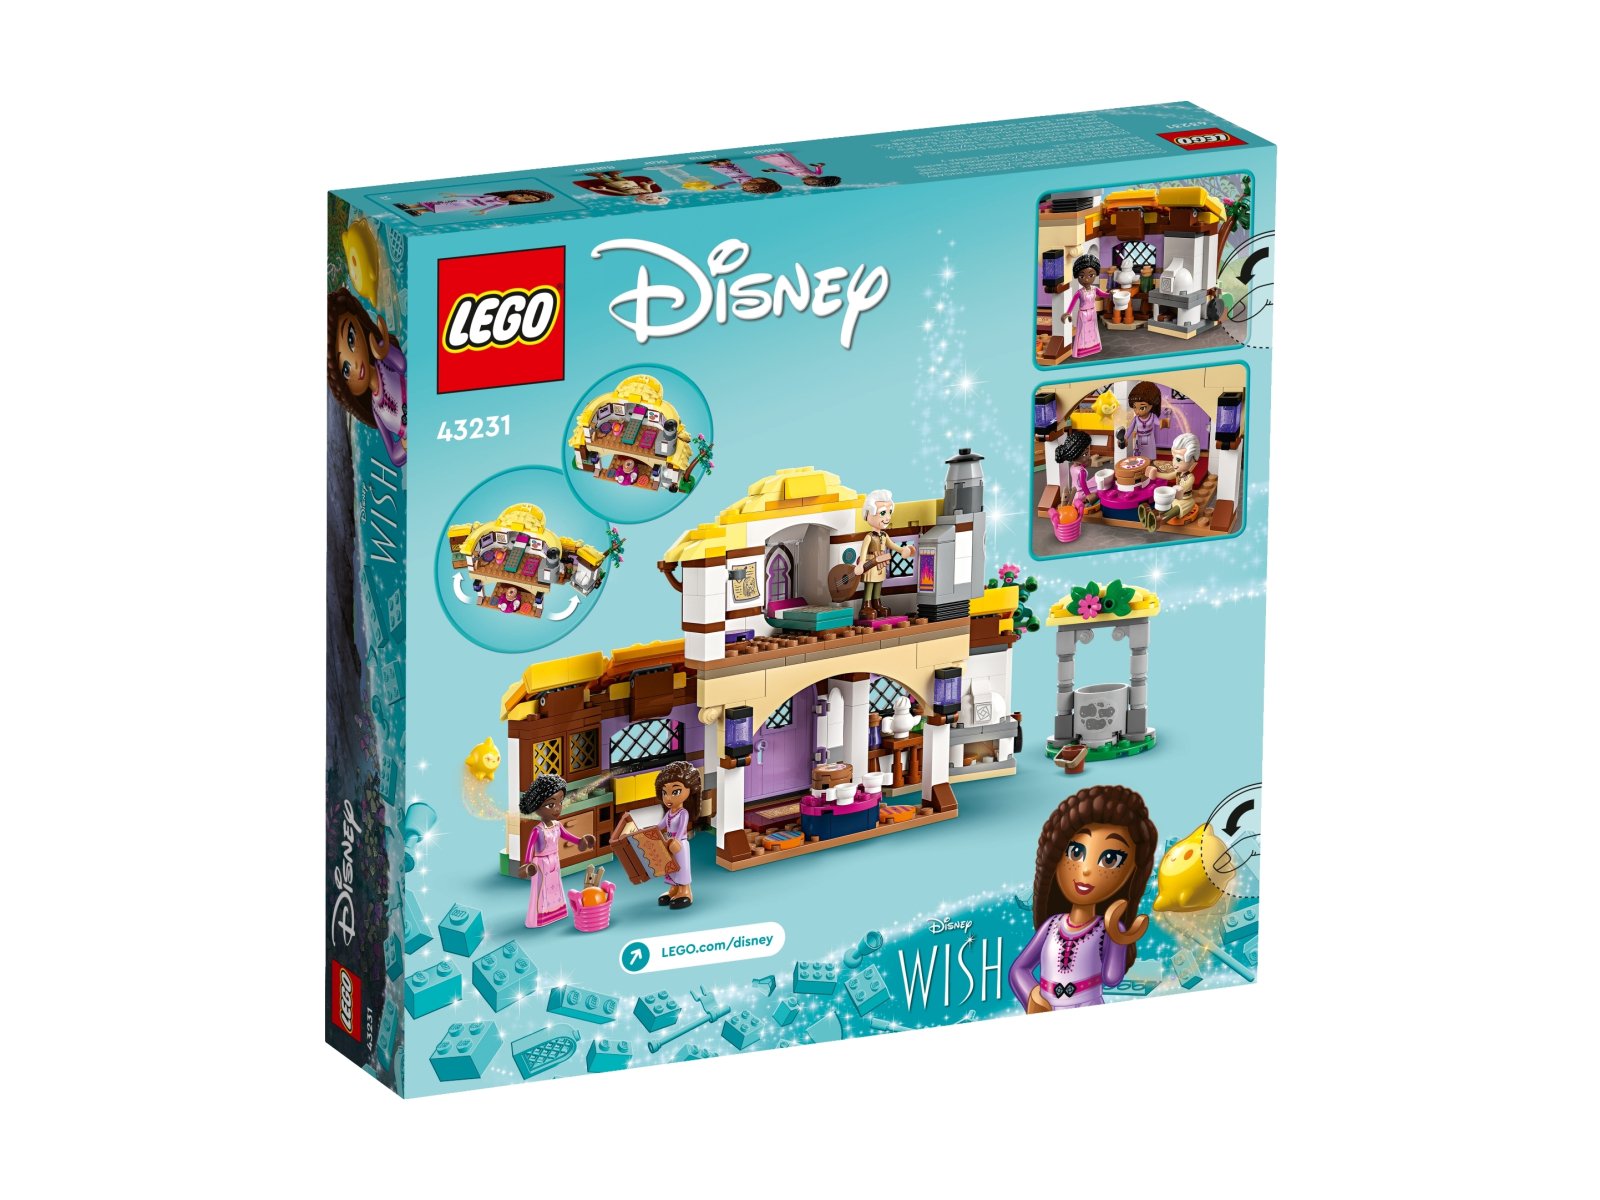 LEGO Disney Chatka Ashy 43231